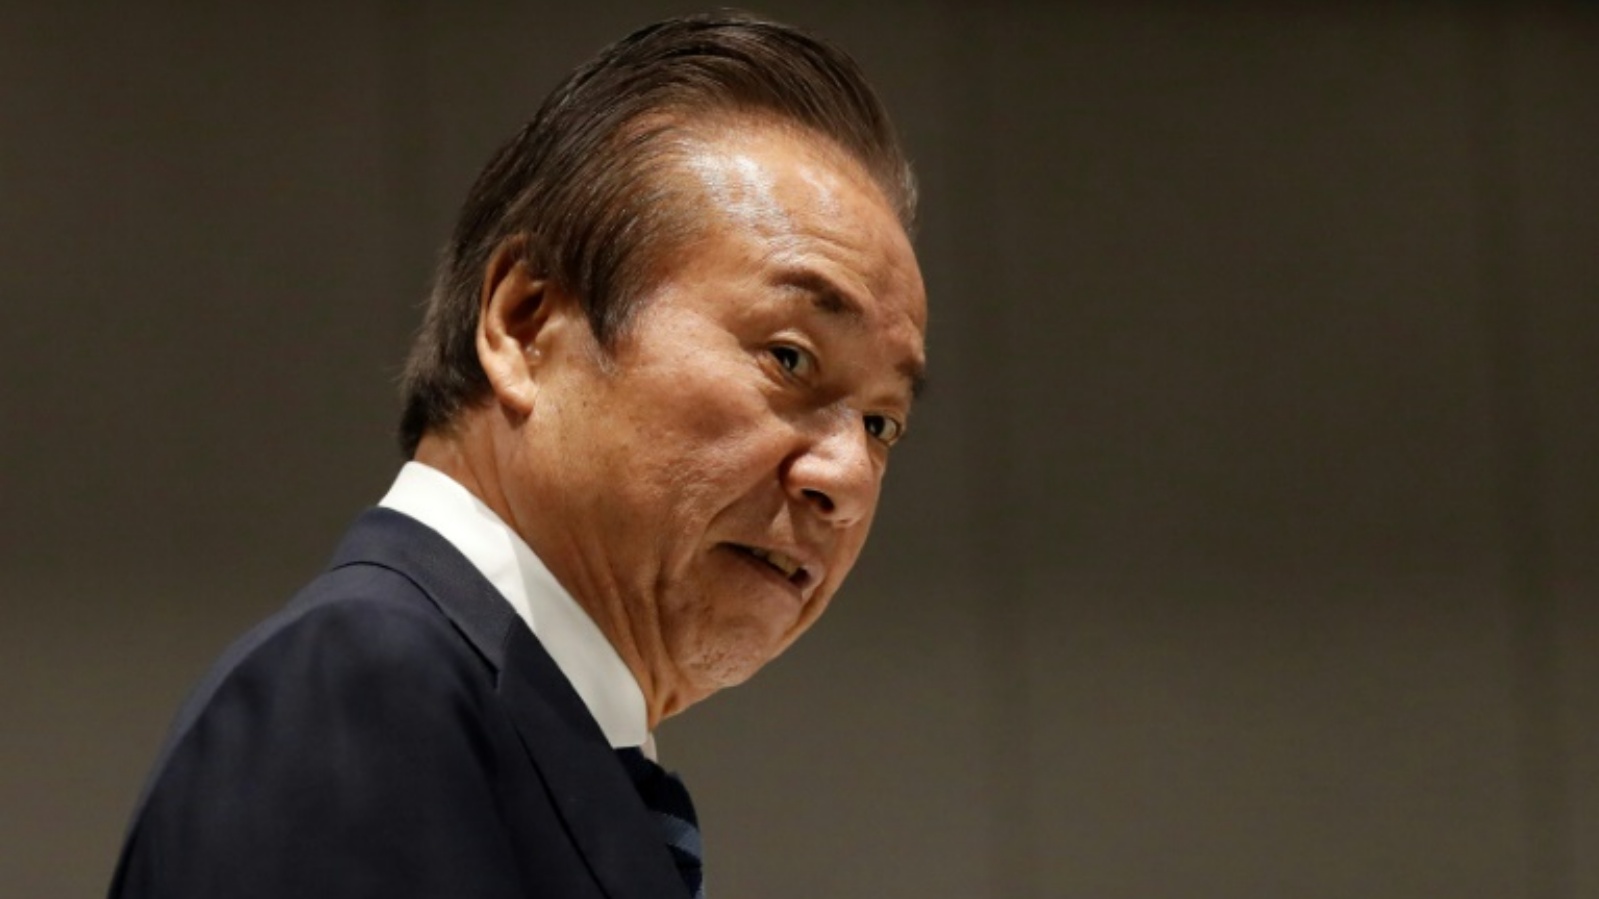 عمل هارويوكي تاكاهاشي في مجلس إدارة طوكيو 2020 منذ يونيو 2014